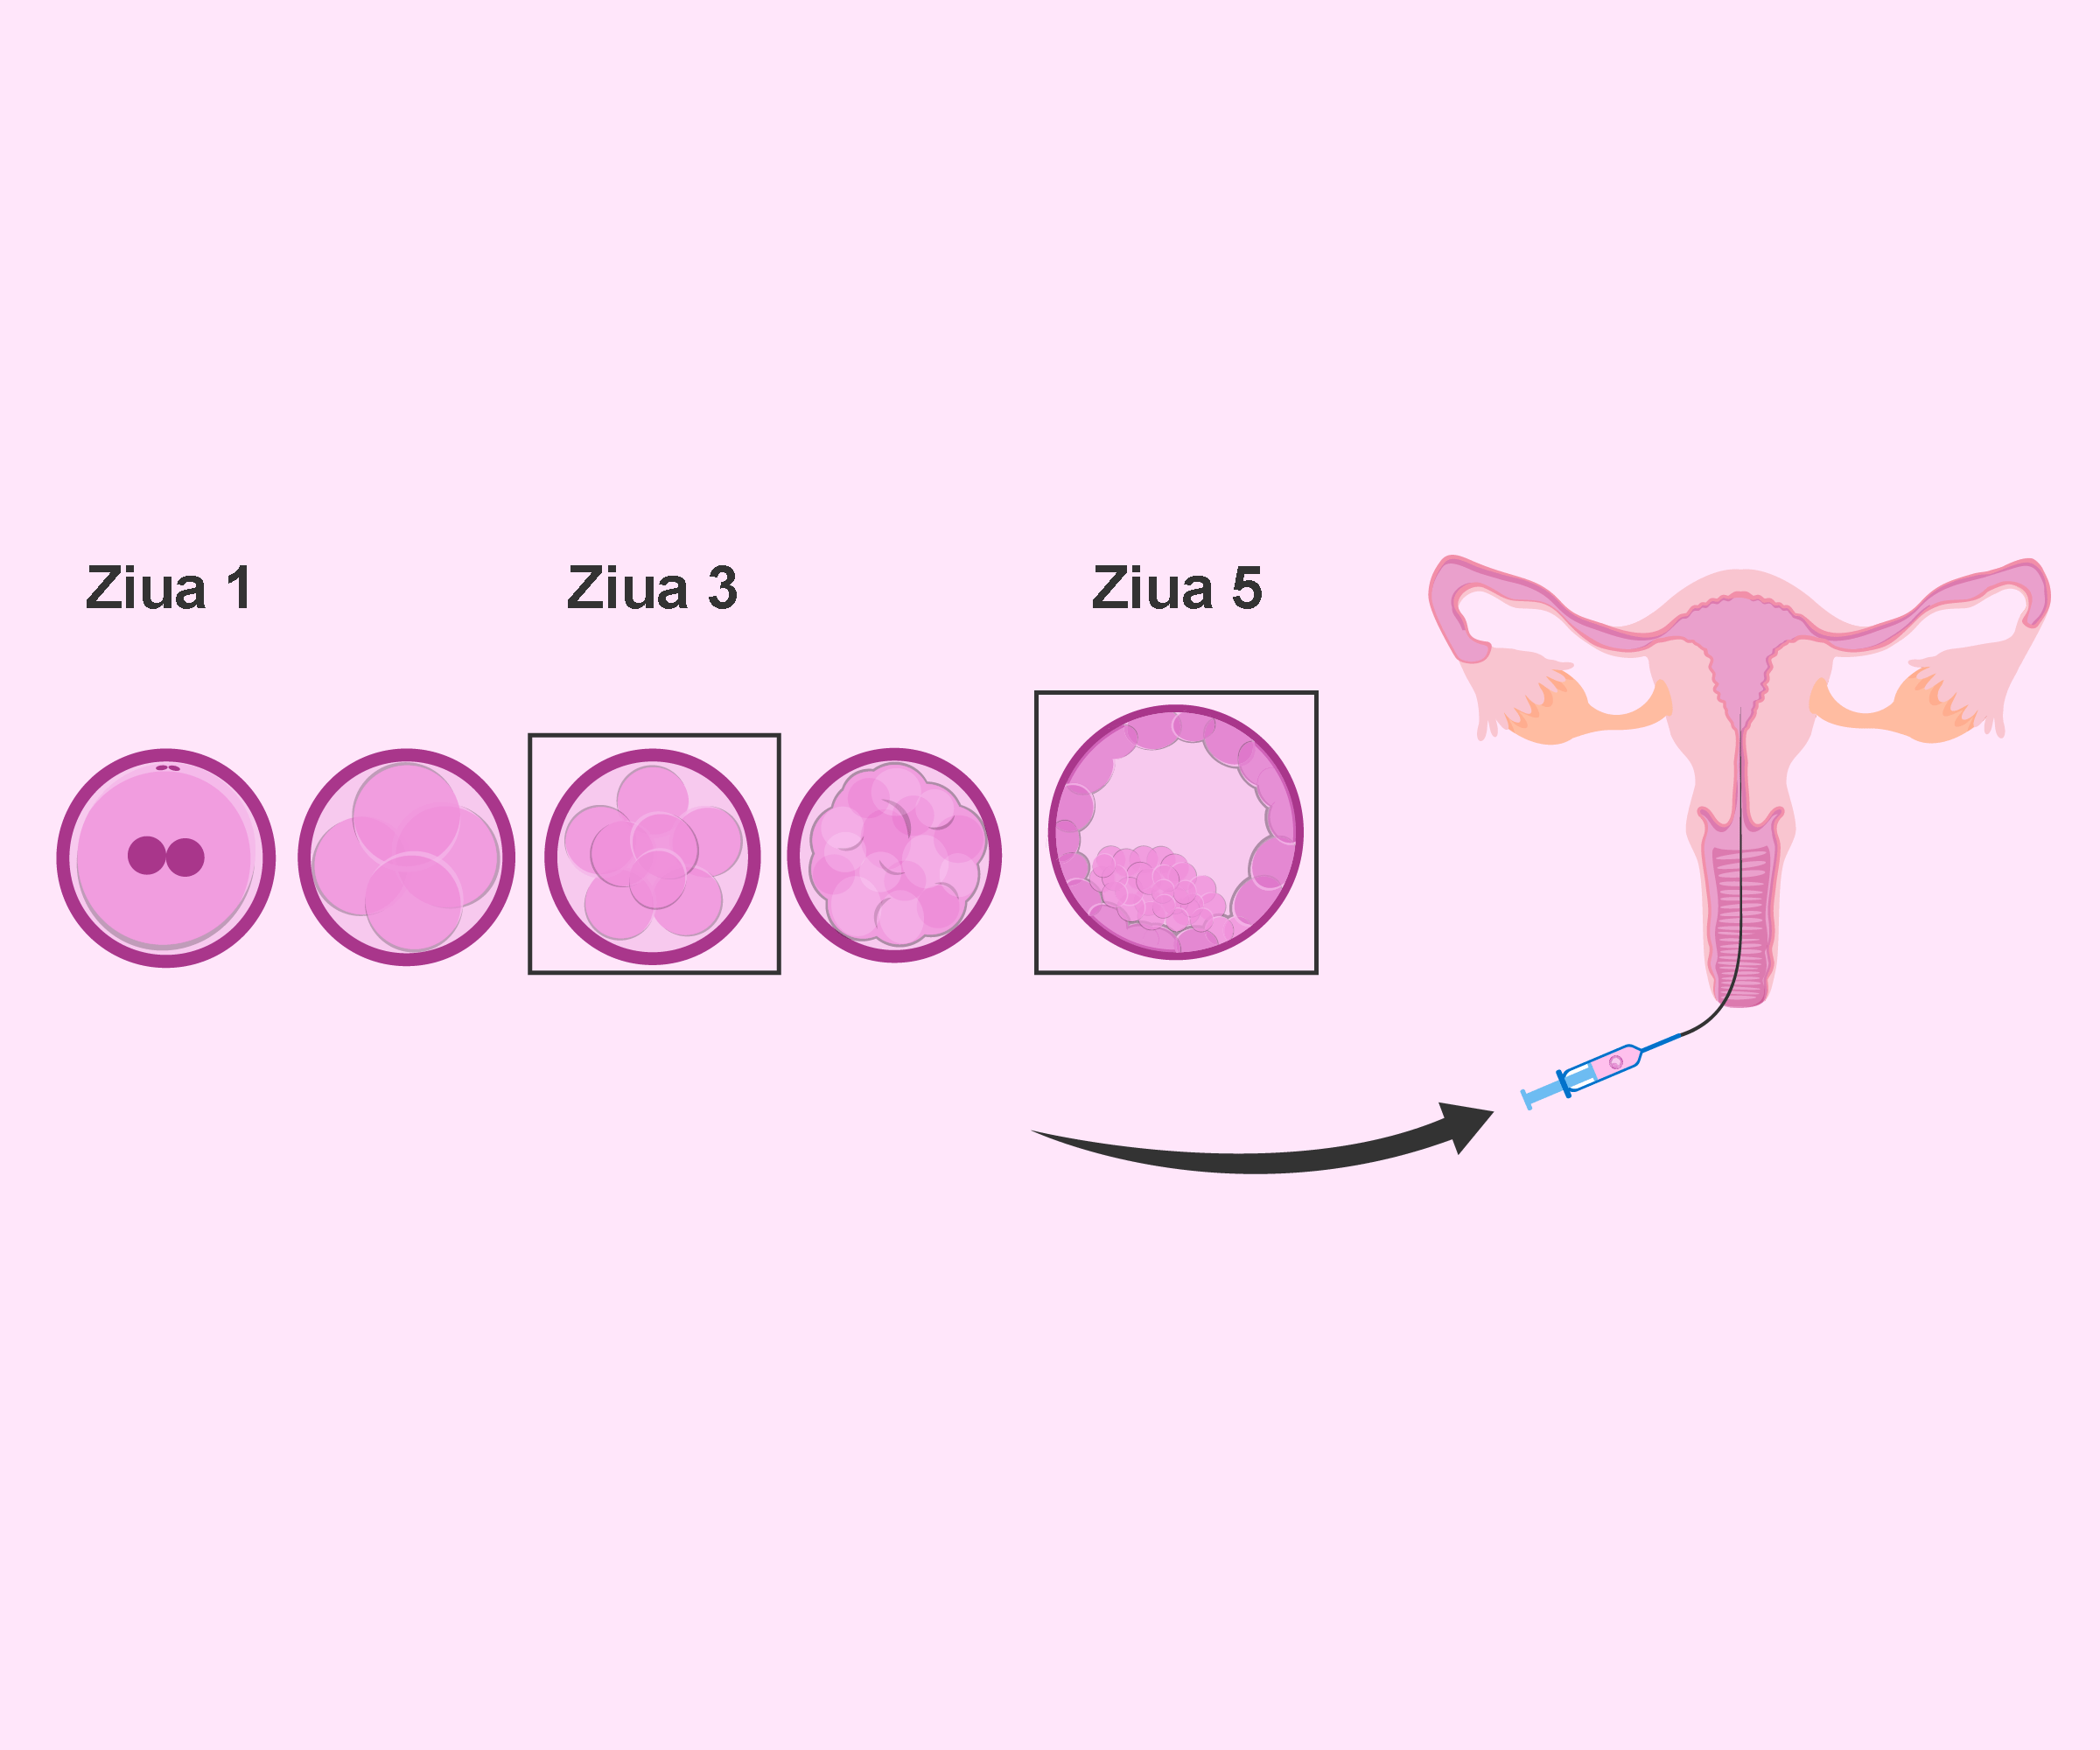 Transfer embrion de ziua 5 versus ziua 3